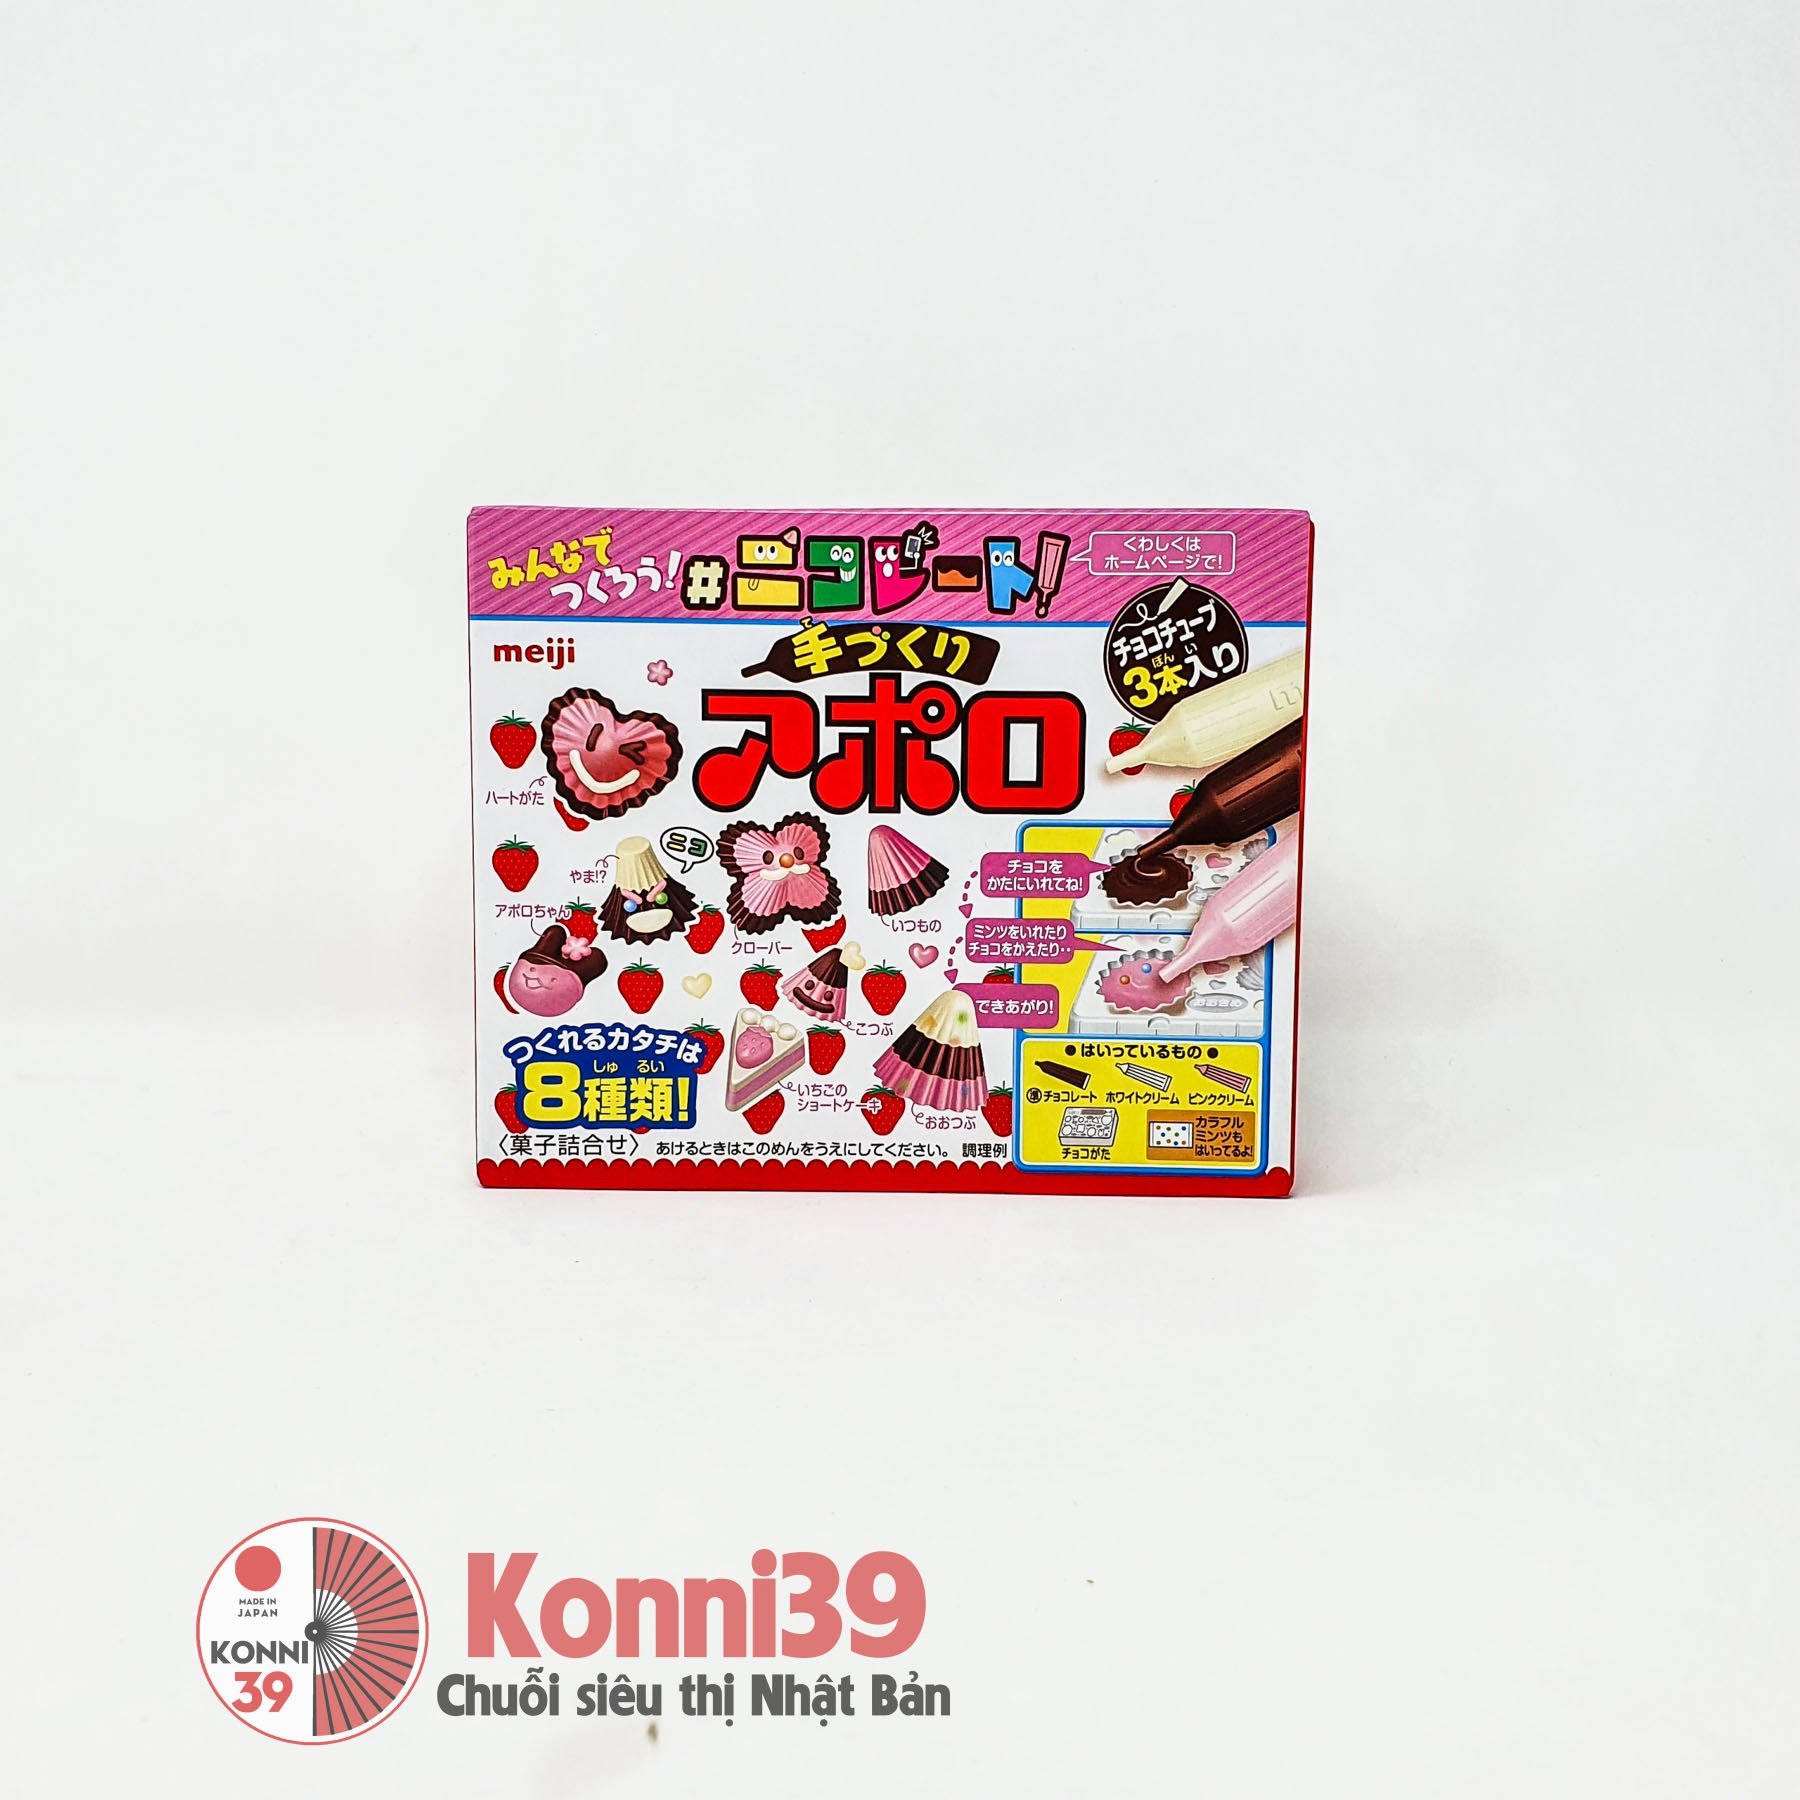 Bộ đồ chơi chế biến hình nấm cho bé Meiji 36g - vị dâu socola 